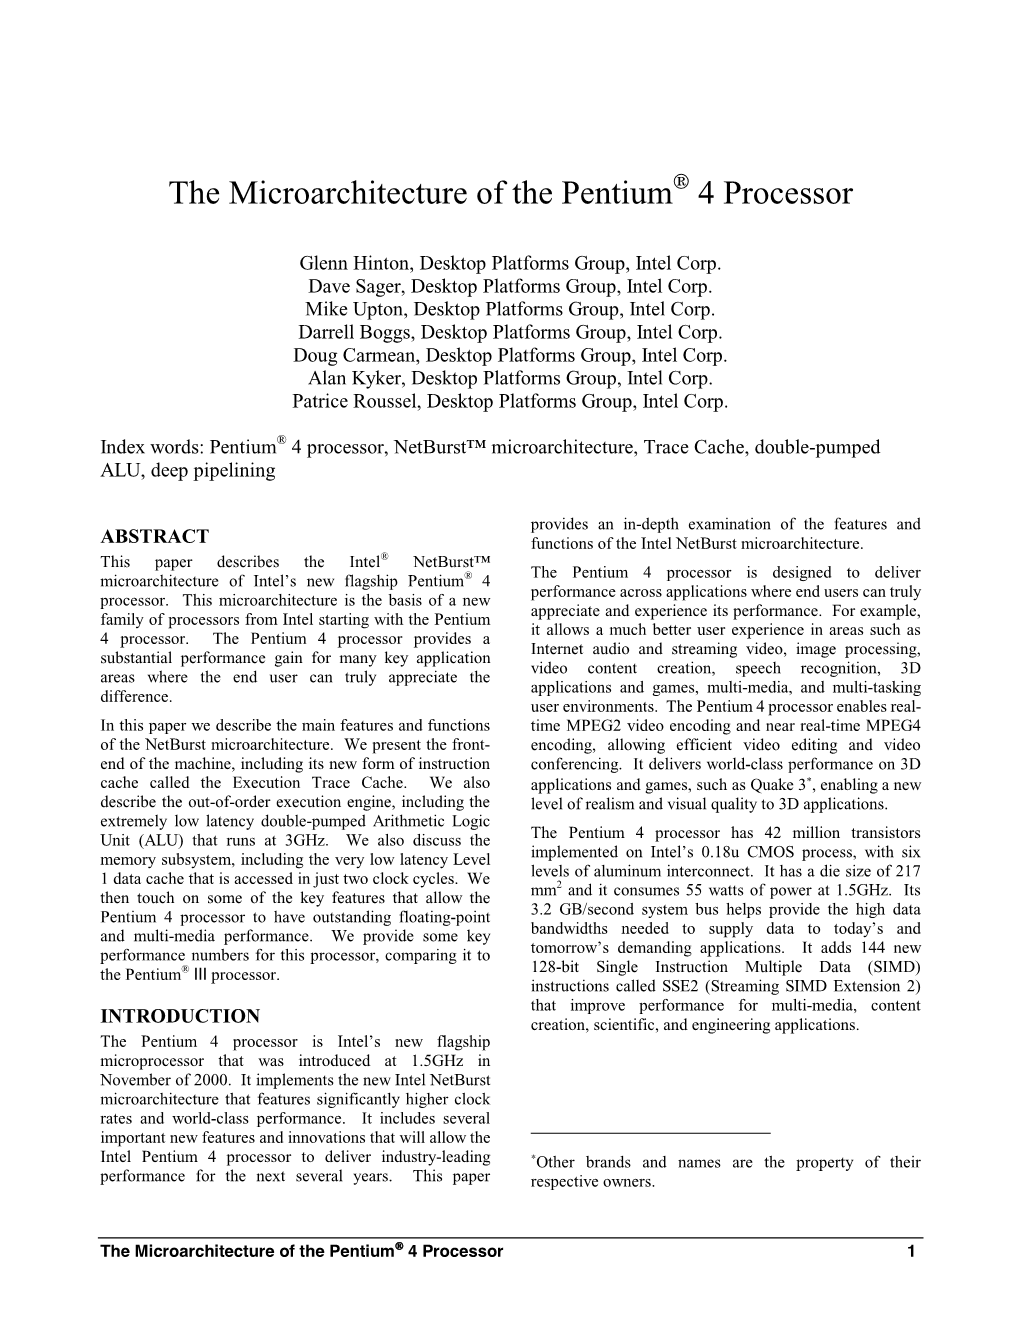 The Microarchitecture of the Pentium 4 Processor